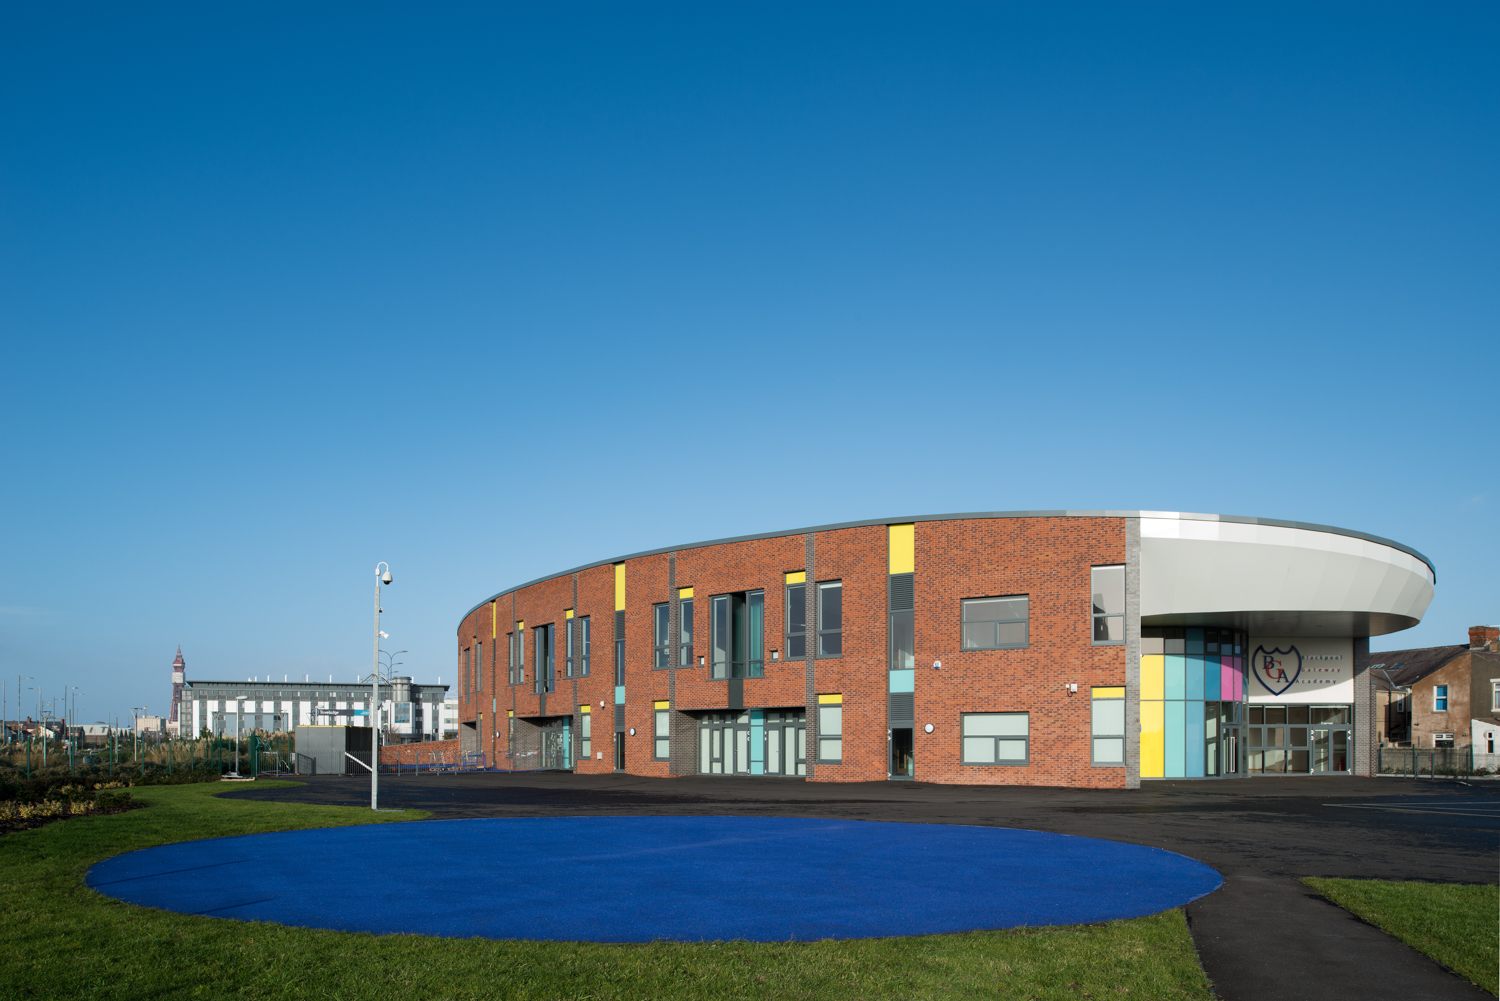 Blackpool Gateway Academy